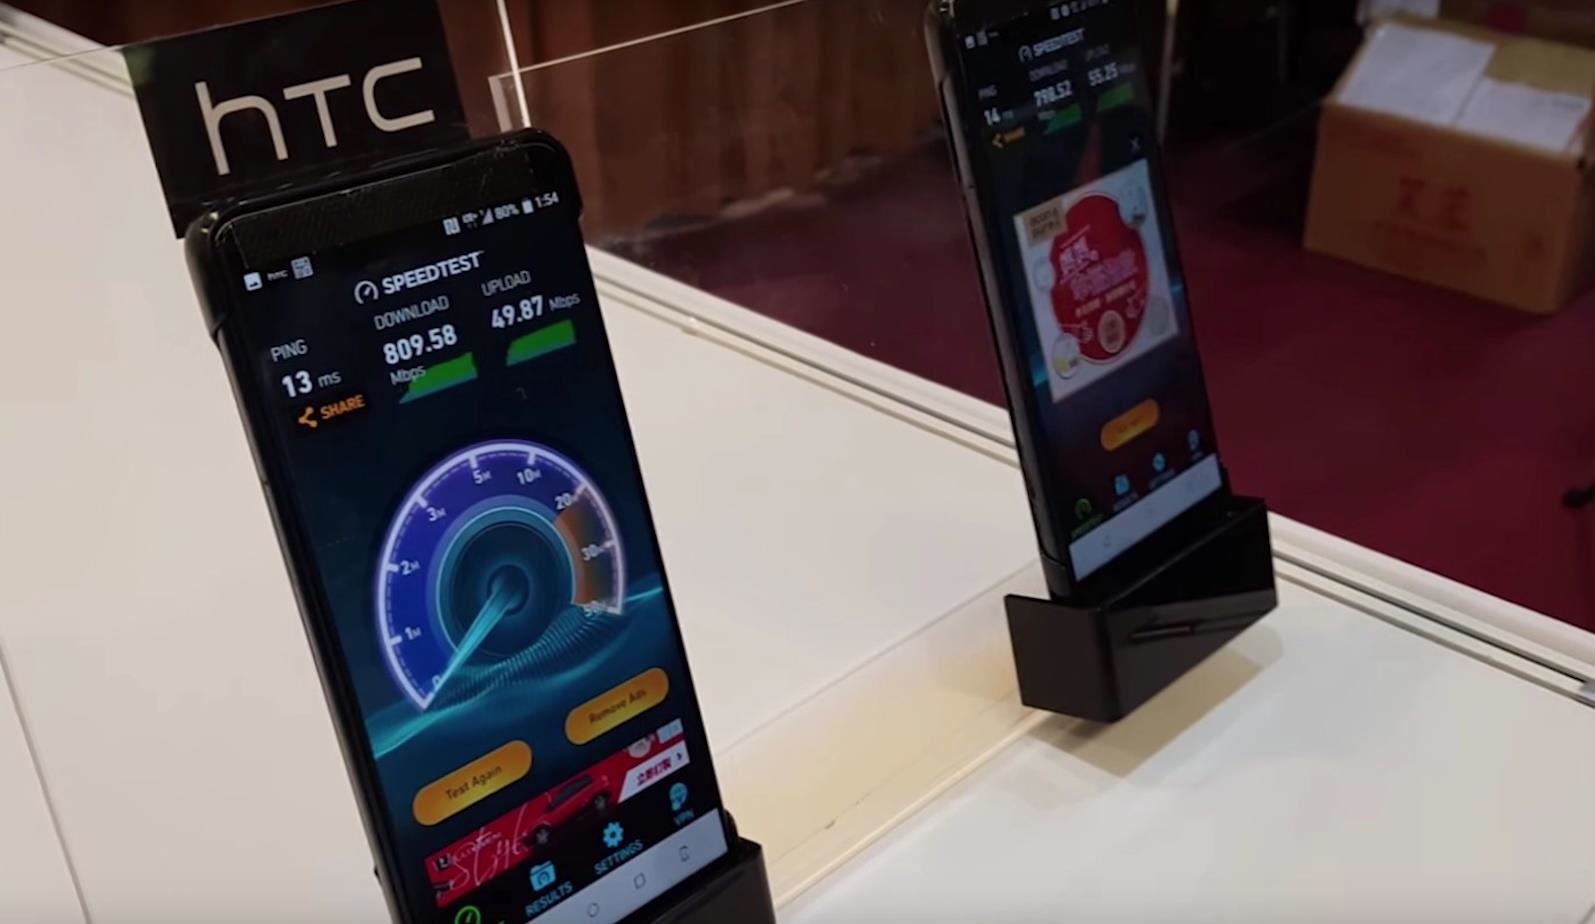 Smartphone được cho là HTC U12 được bày tại sự kiện 5G